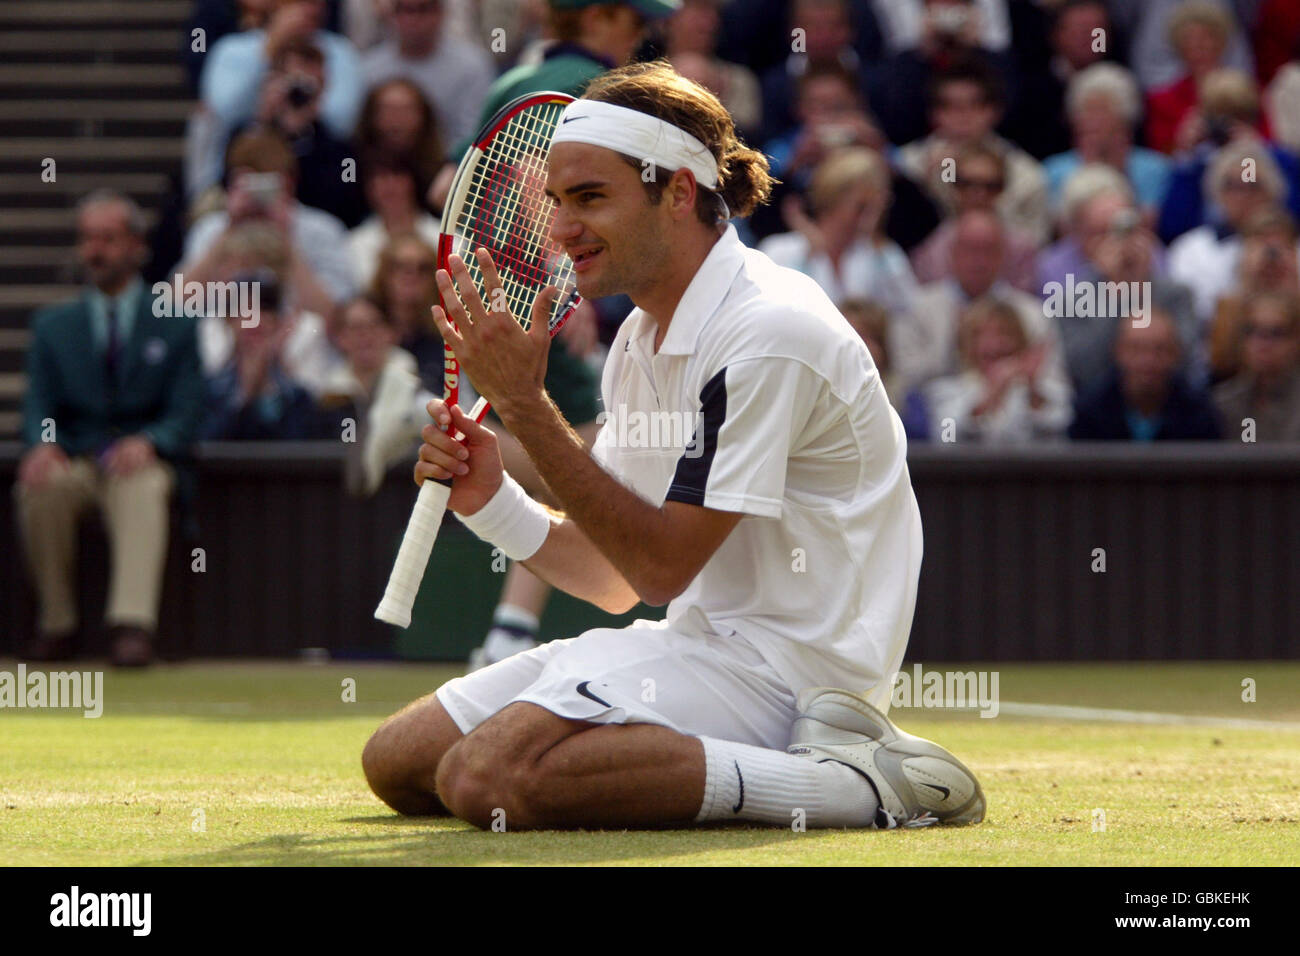 Tennis – Wimbledon 2004 – Herrenfinale – Roger Federer gegen Andy Roddick.  Roger Federer feiert den Sieg Stockfotografie - Alamy